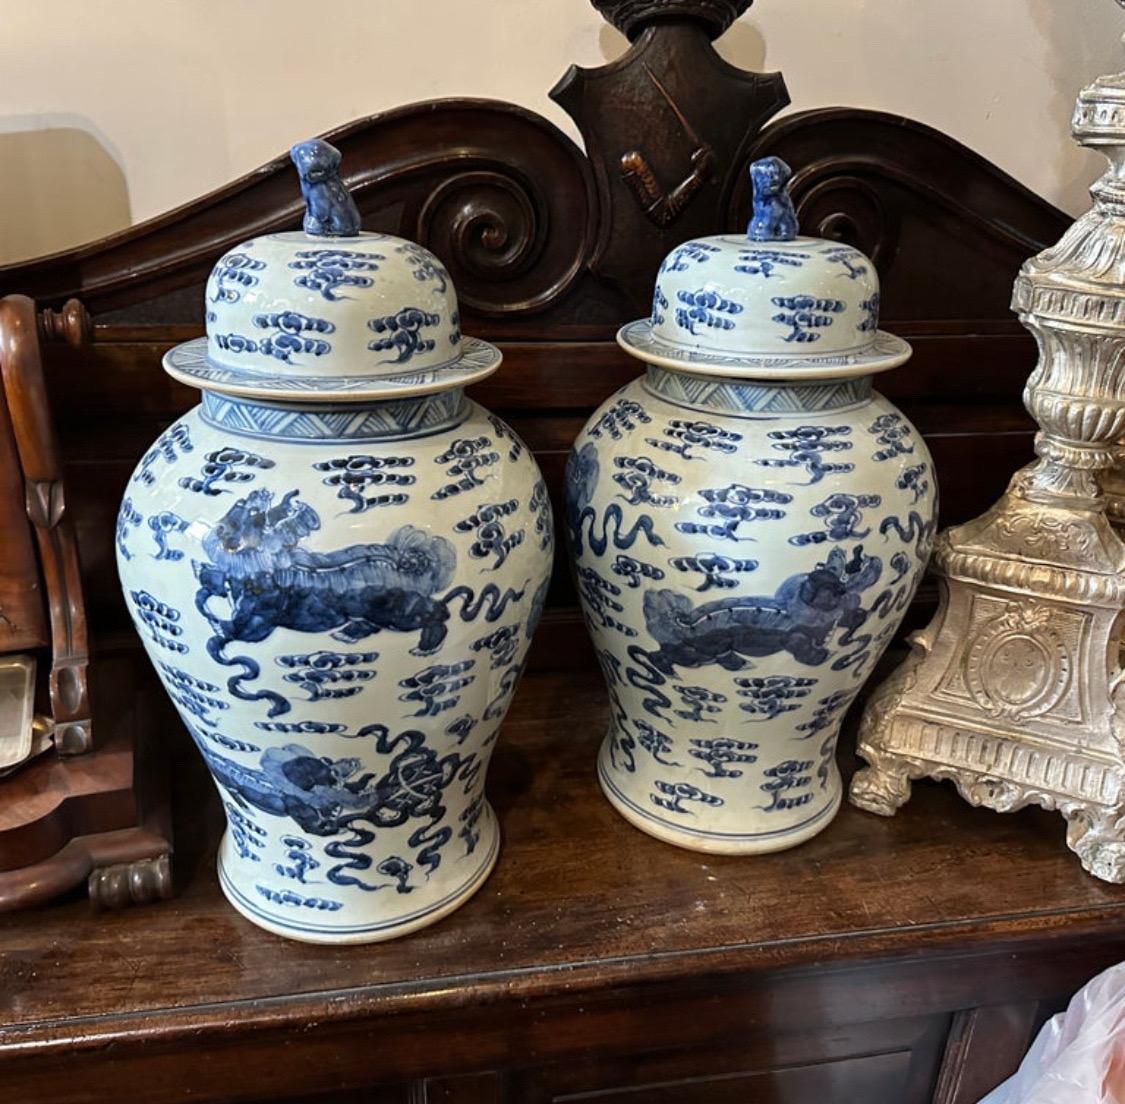 Fabriqués en Chine au milieu du XXe siècle, ces pots de gingembre illustrent le style classique de la céramique bleue et blanche, apprécié depuis des siècles. Les pots sont fabriqués en matériaux céramiques de haute qualité, connus pour leur